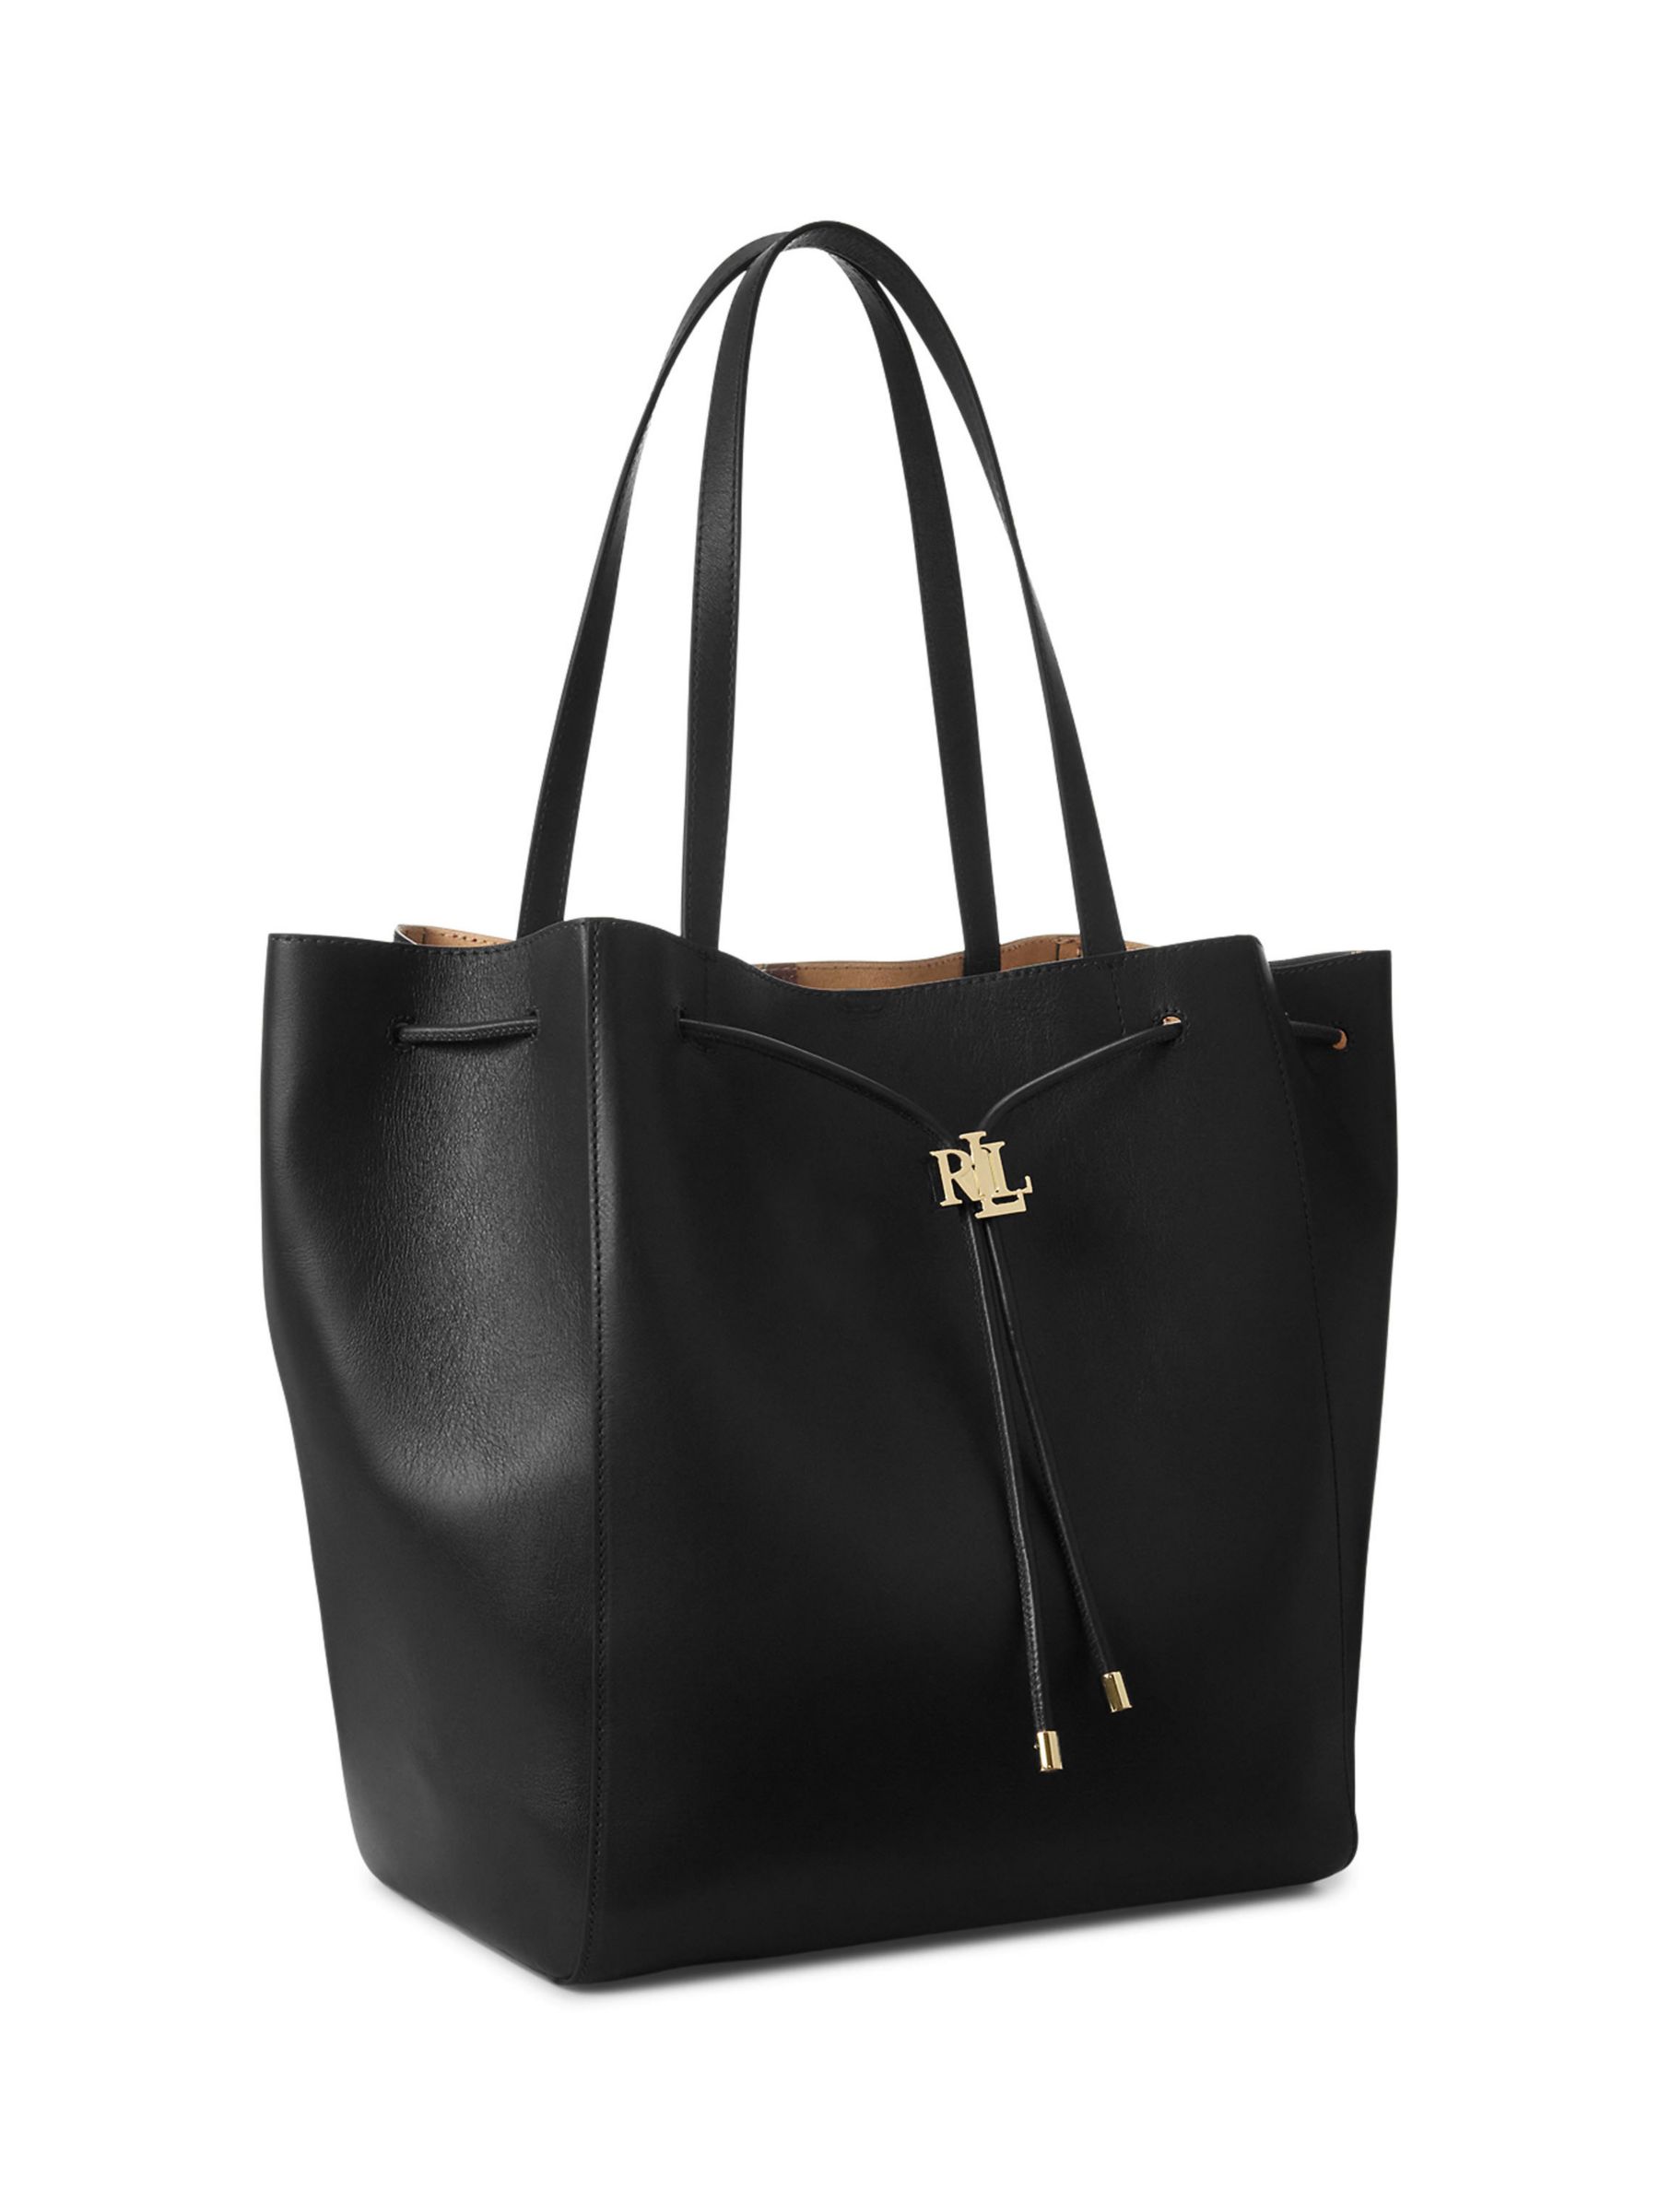 Lauren Ralph Lauren Andie Leather Tote Bag